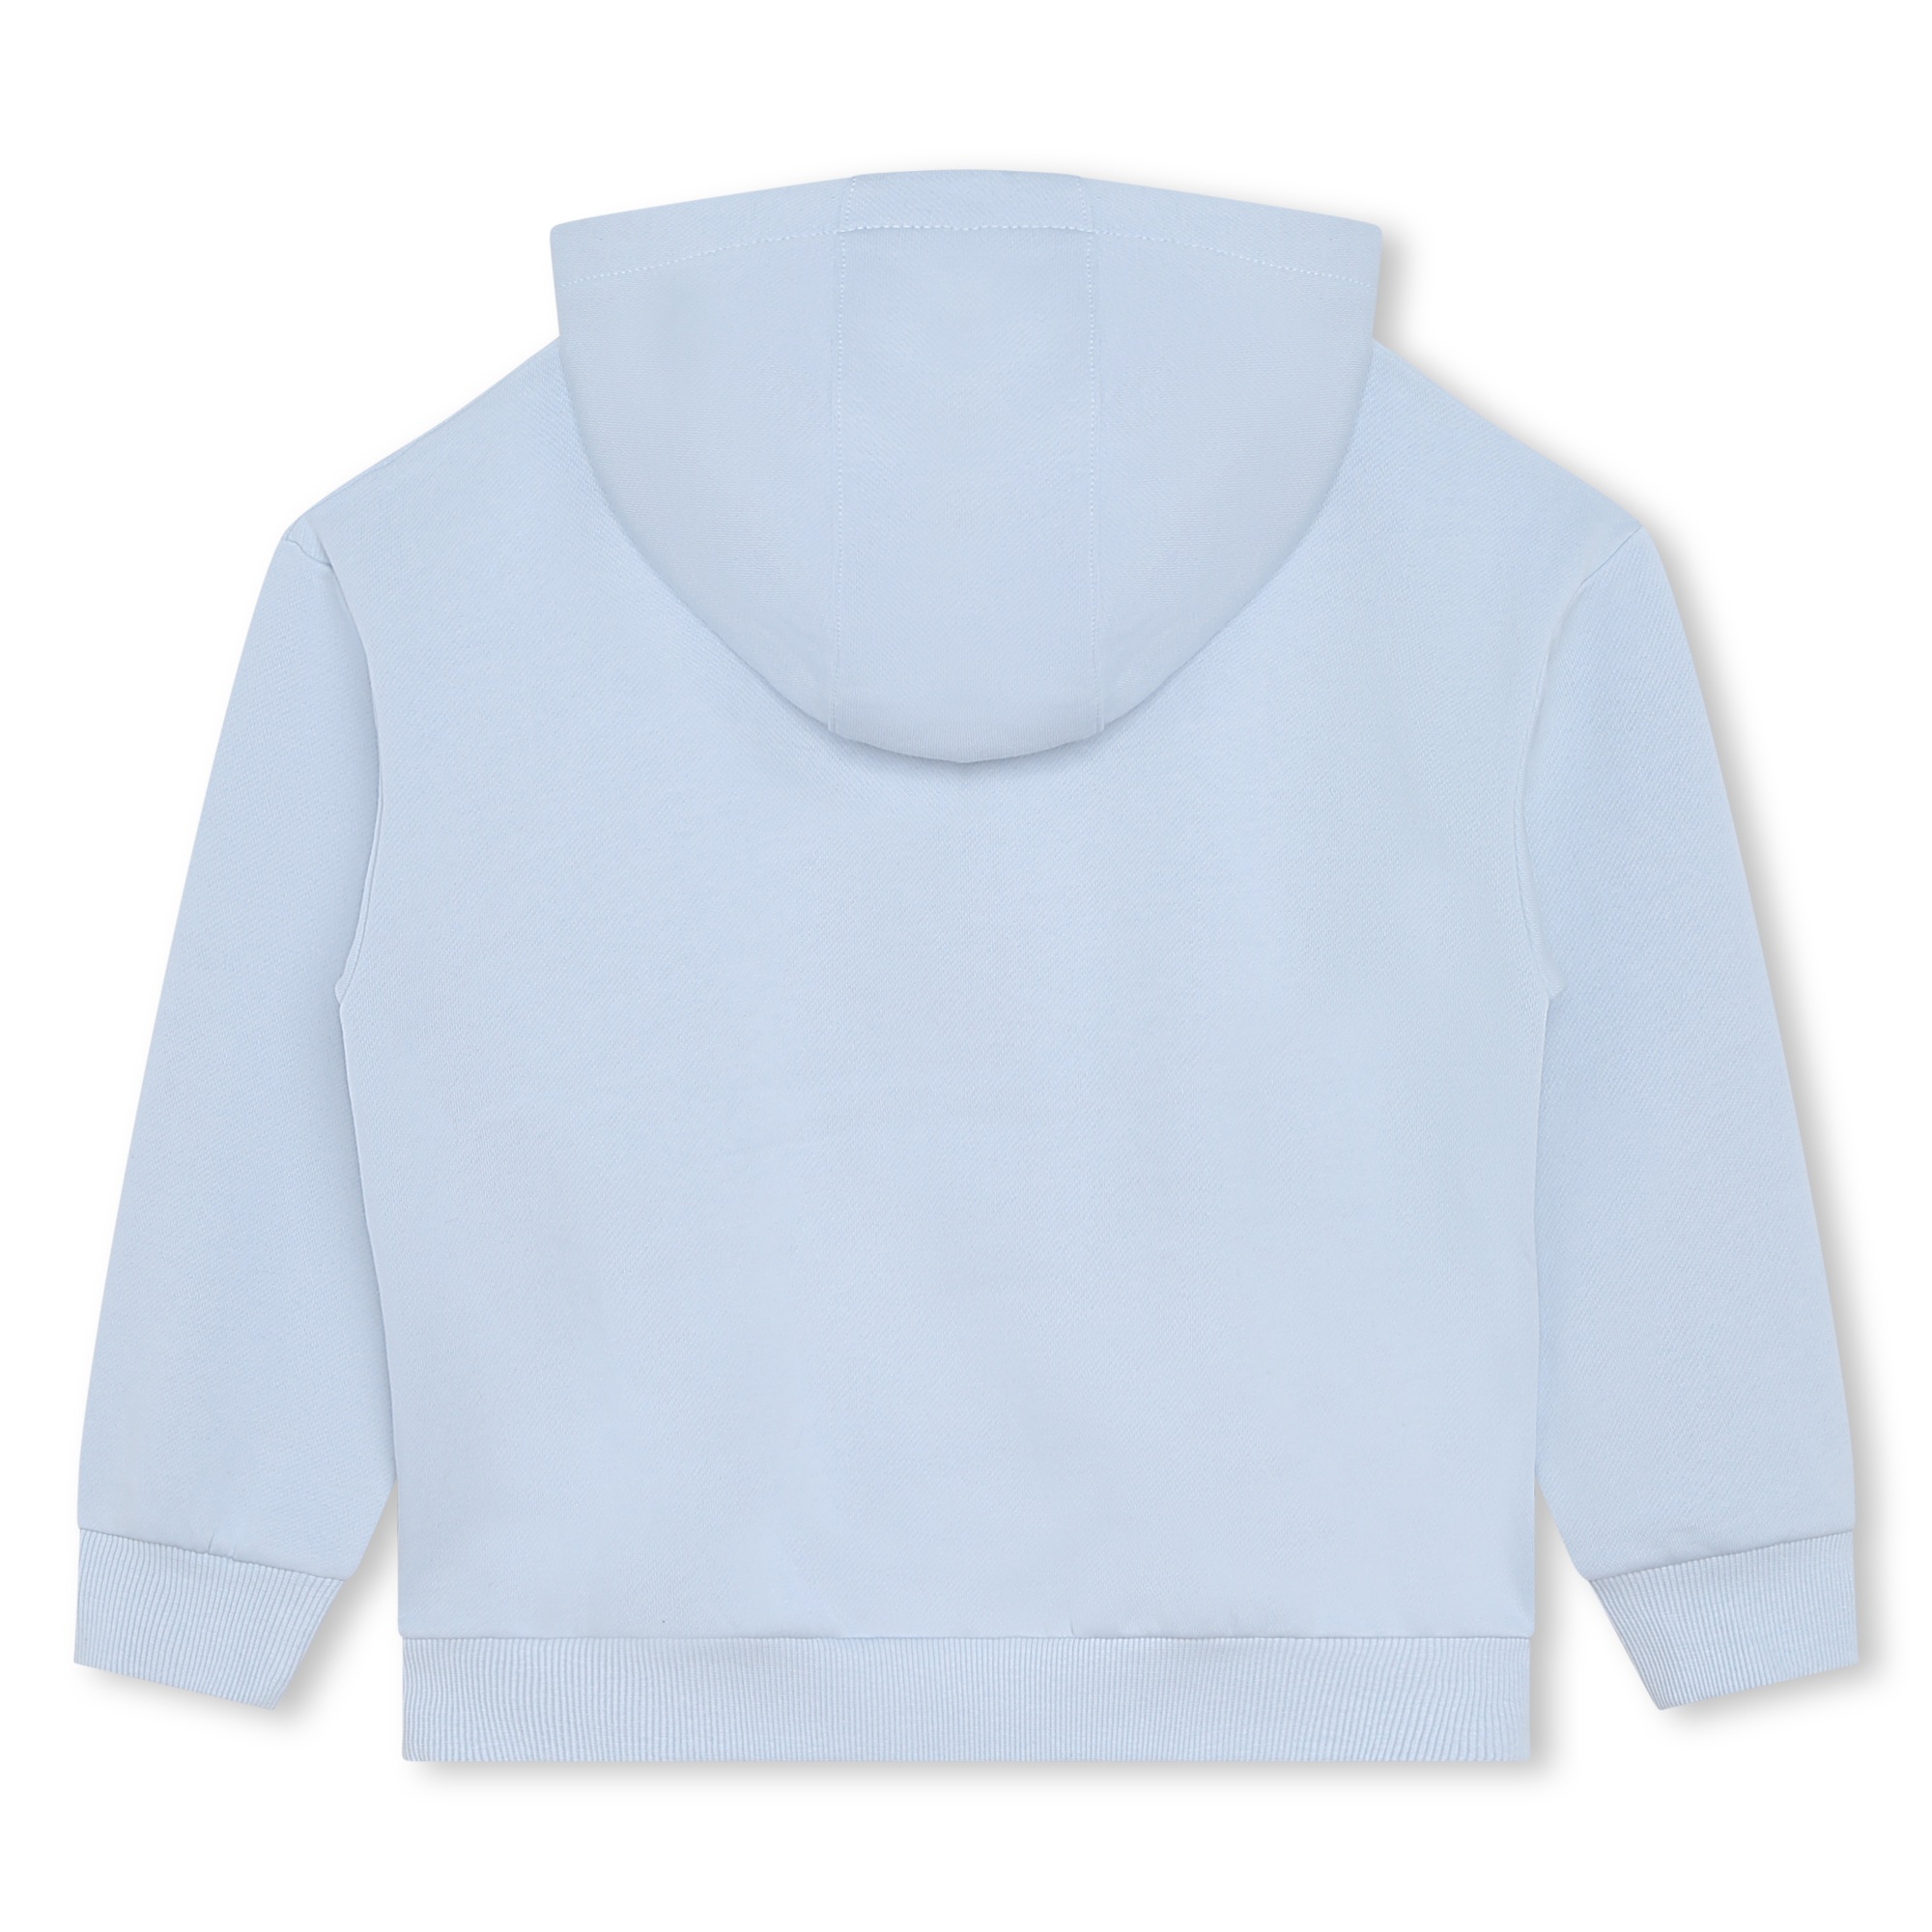 Sweater aus gebürstetem fleece KENZO KIDS Für JUNGE